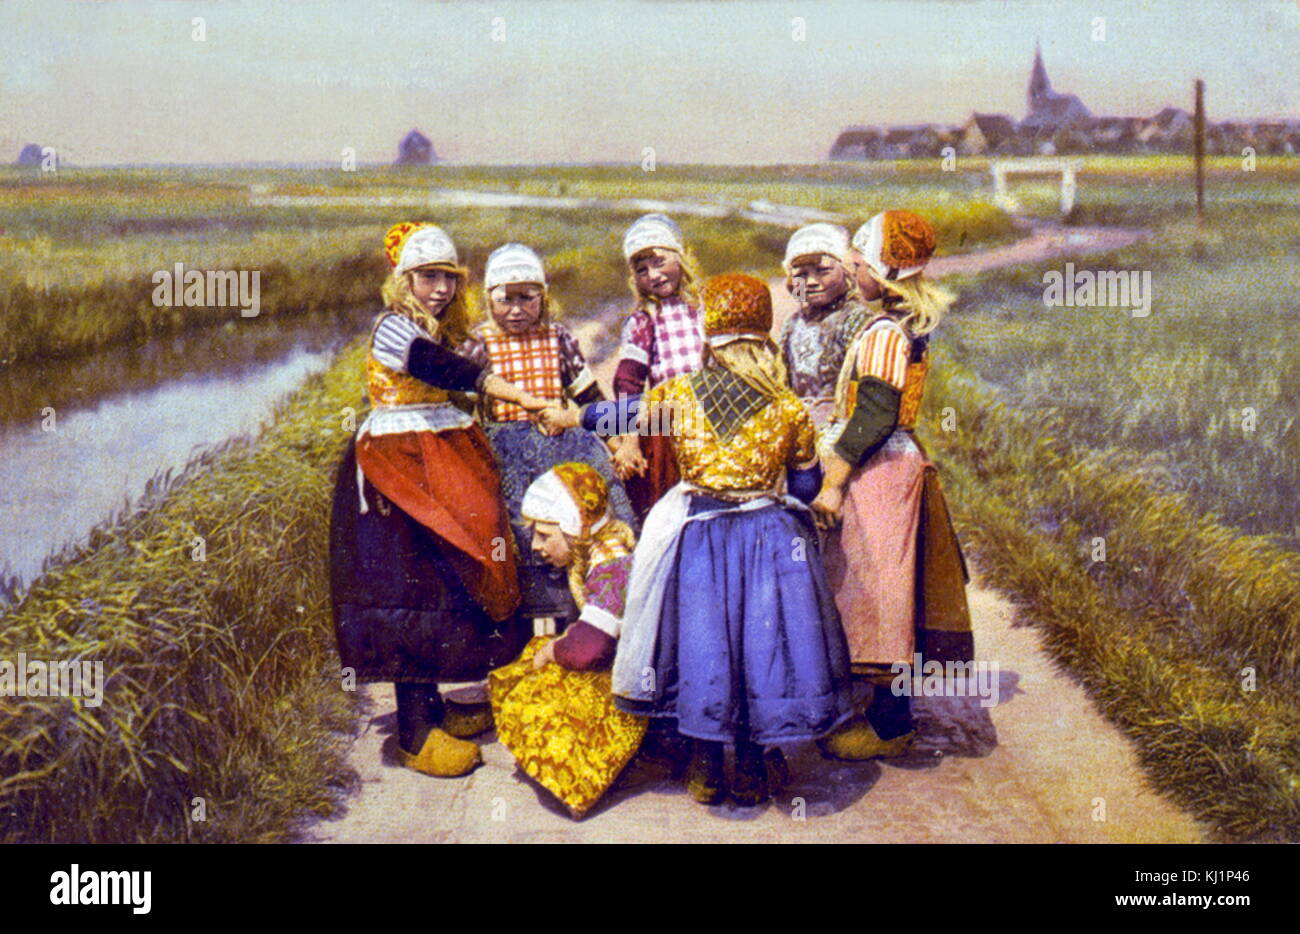 Fotomechanischen drucken auf 1900 datiert, das Niederländische Kinder in traditioneller Kleidung einschließlich Holzschuhe Stockfoto